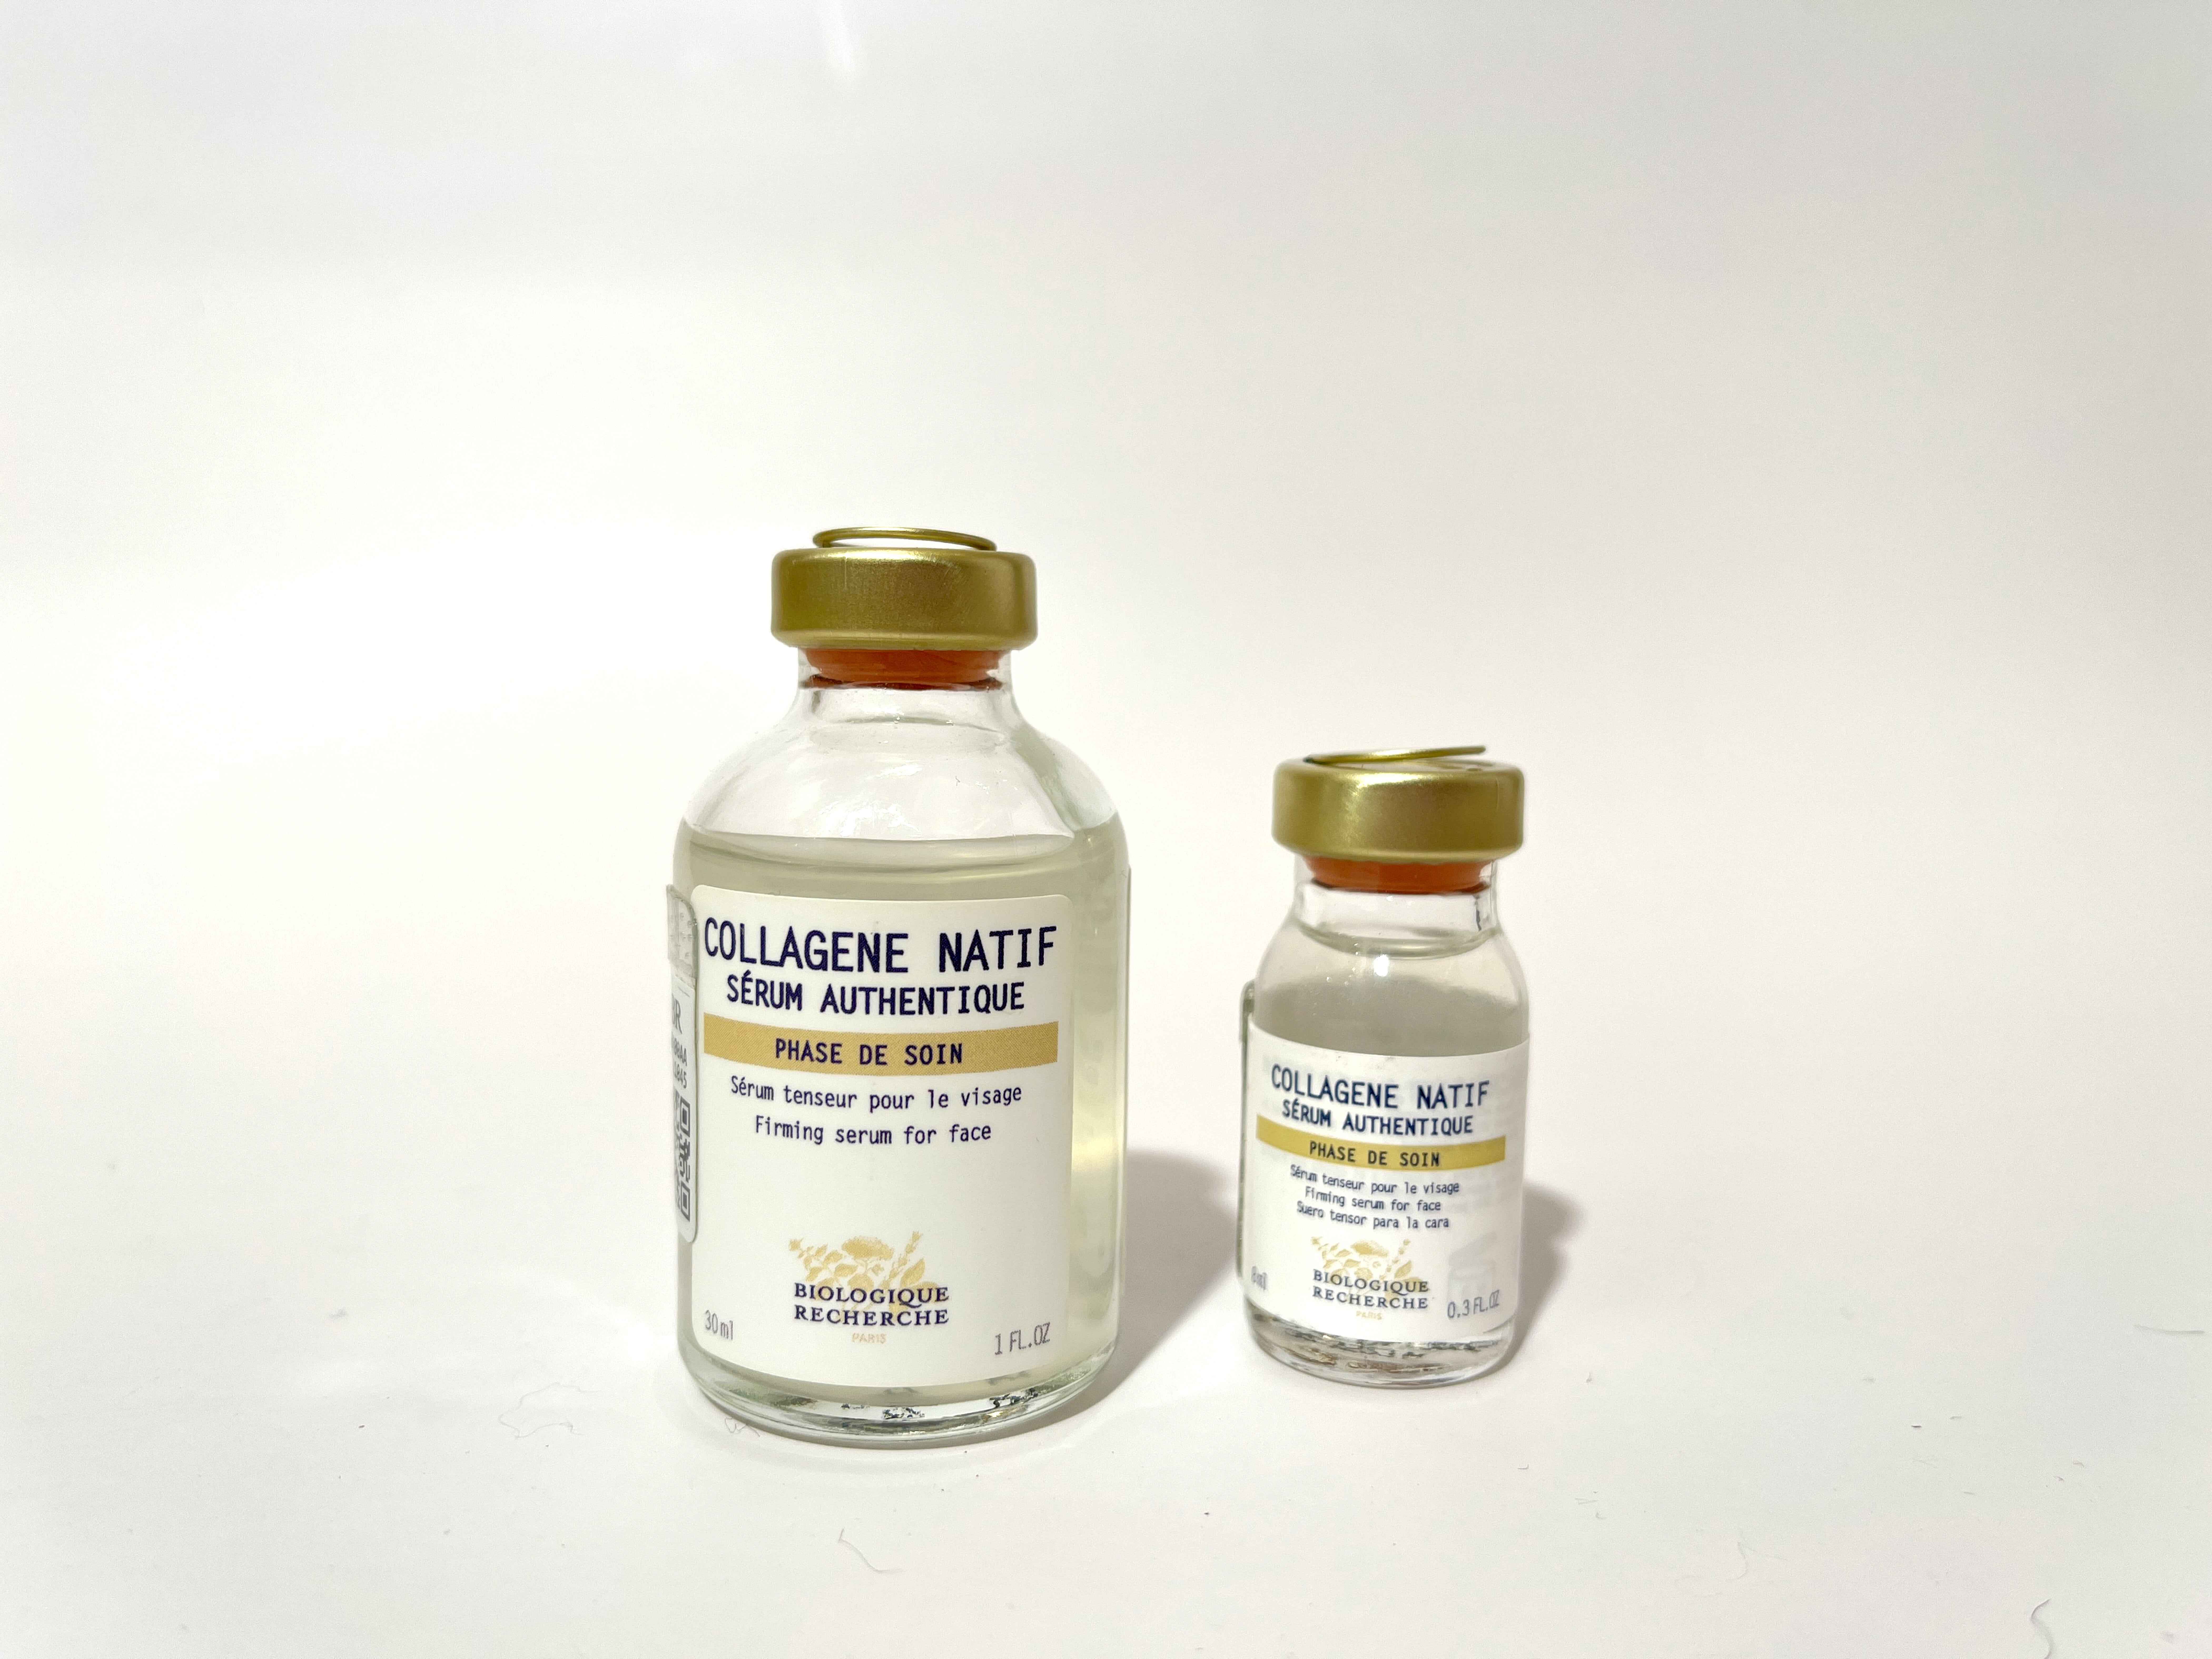 Collagen Natiff Serum Authentique by Biologique Recherche